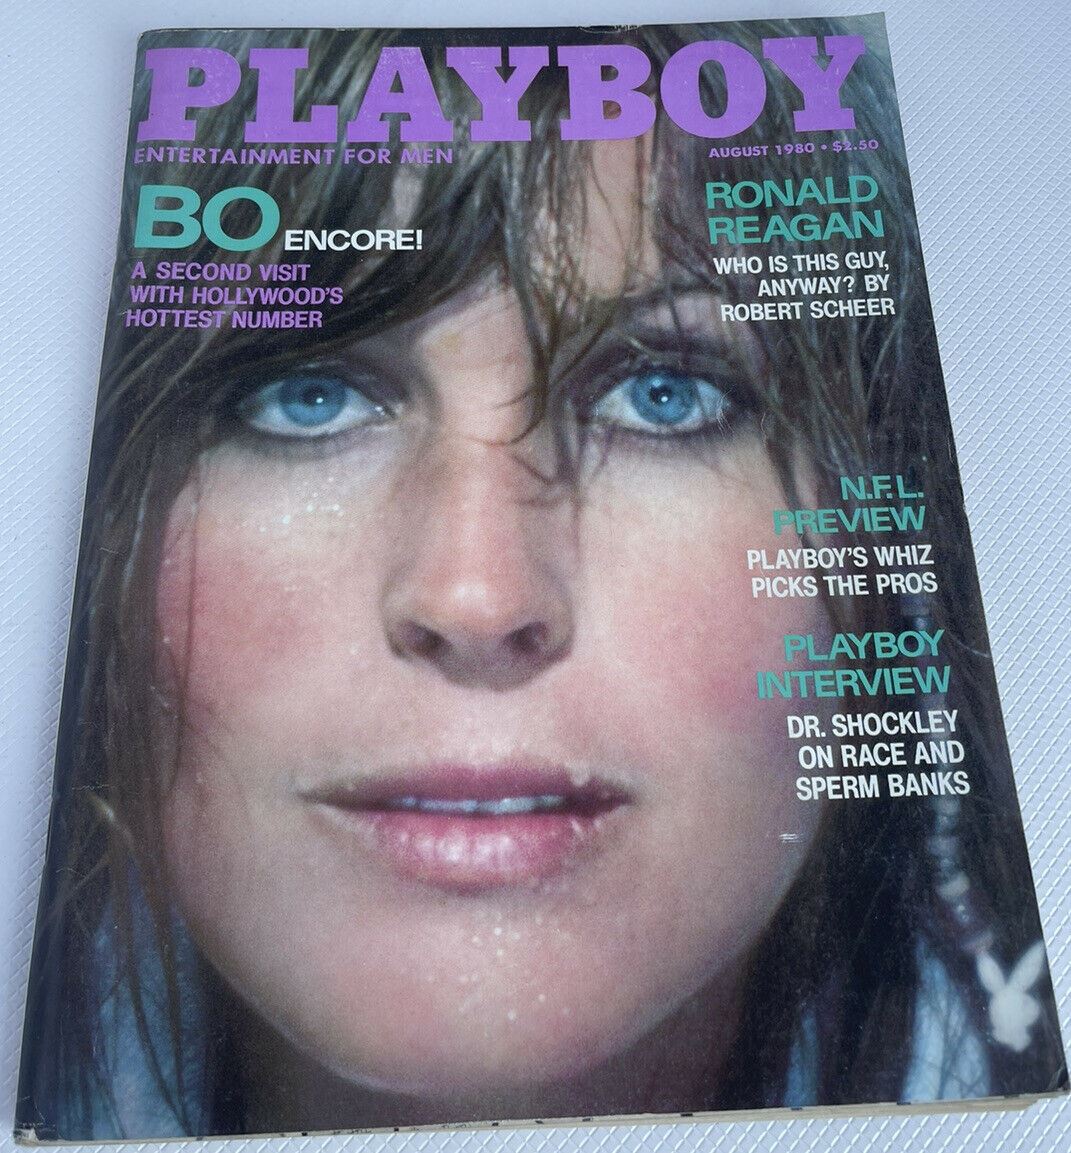 Playboy Brazil | November 1985 at Wolfgang's